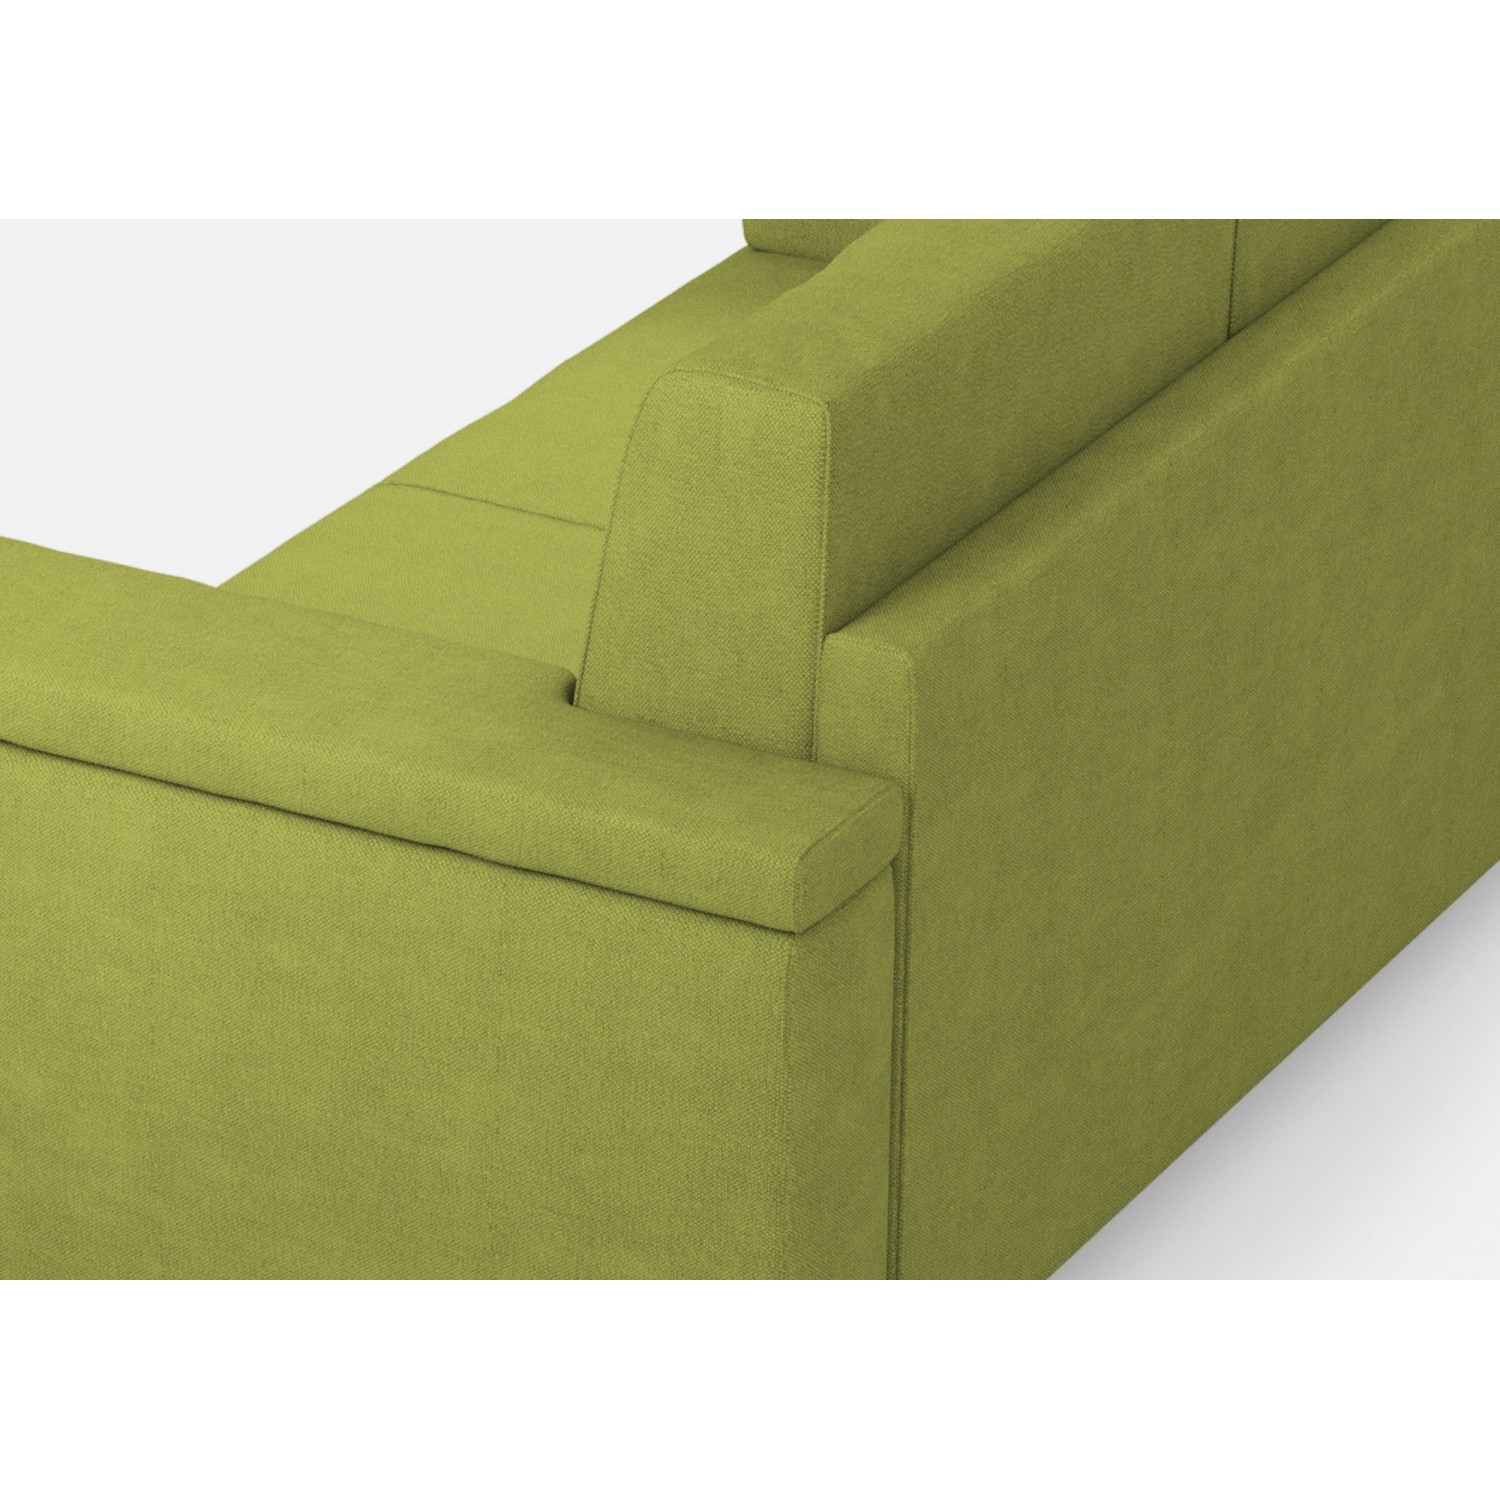 Ityhome Divano Marrak 3 posti  (tre sedute da 60cm) + angolo + divano 2 posti( due sedute da 60cm) misure esterne L.286x226 colore verde